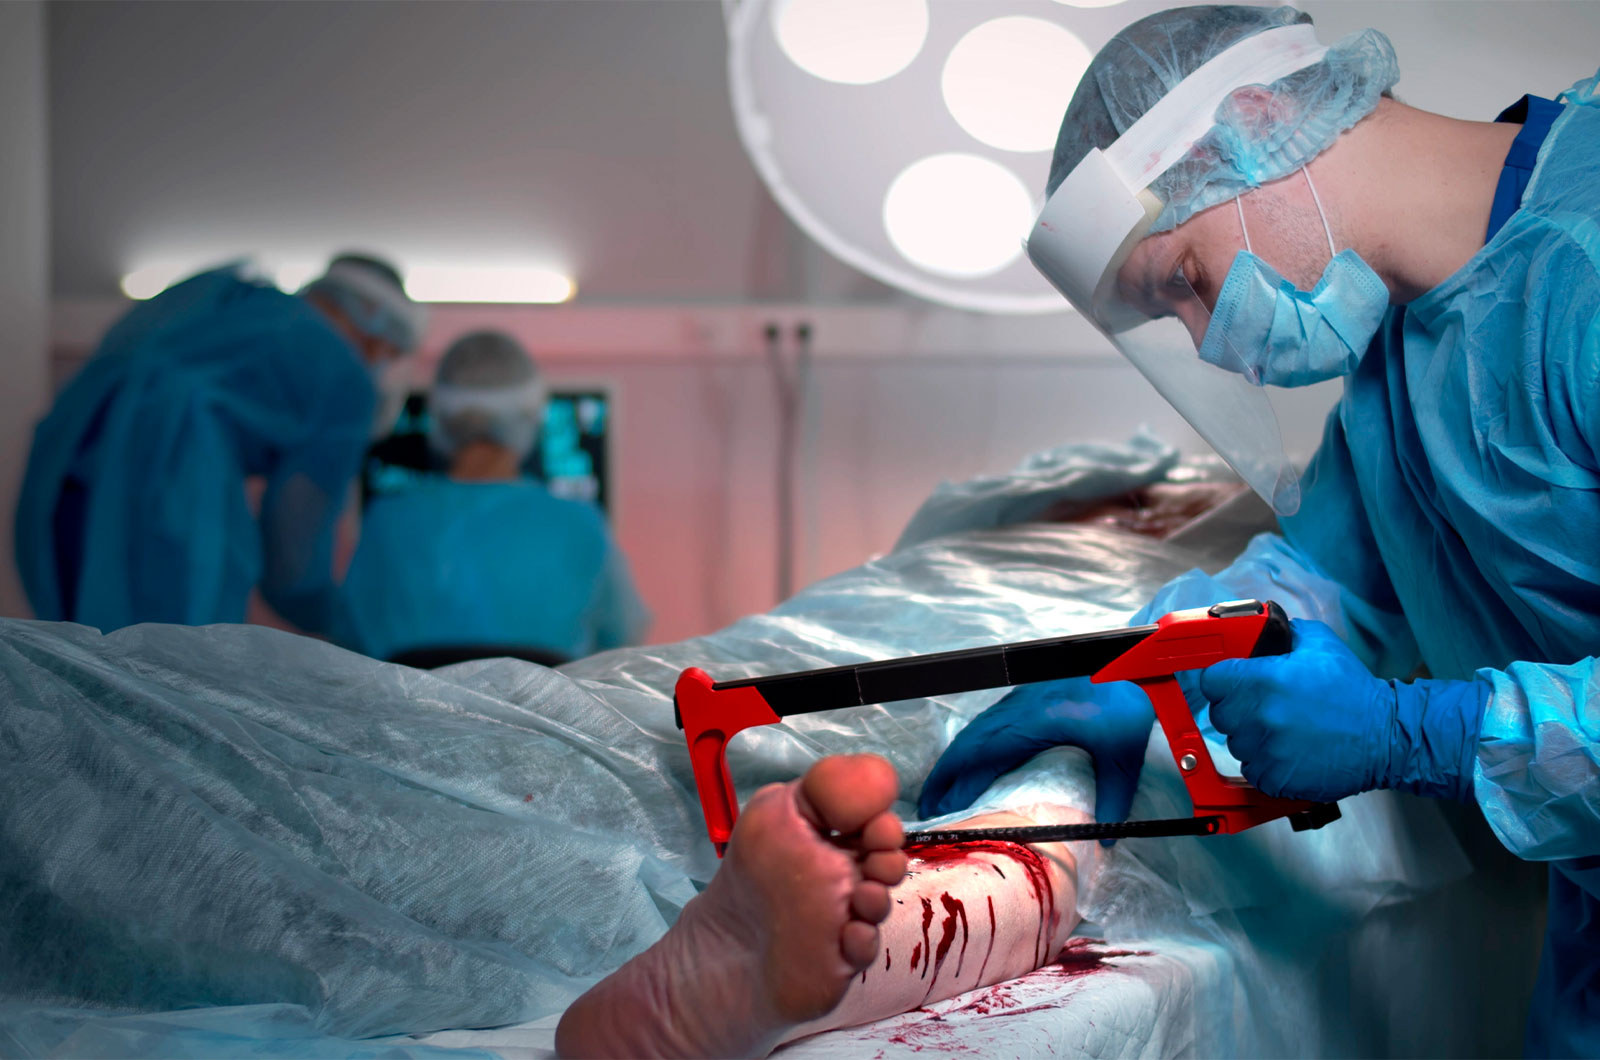 Chirurg mit Amputationssäge amputiert bei einem Patienten das linke Bein im Operationssaal